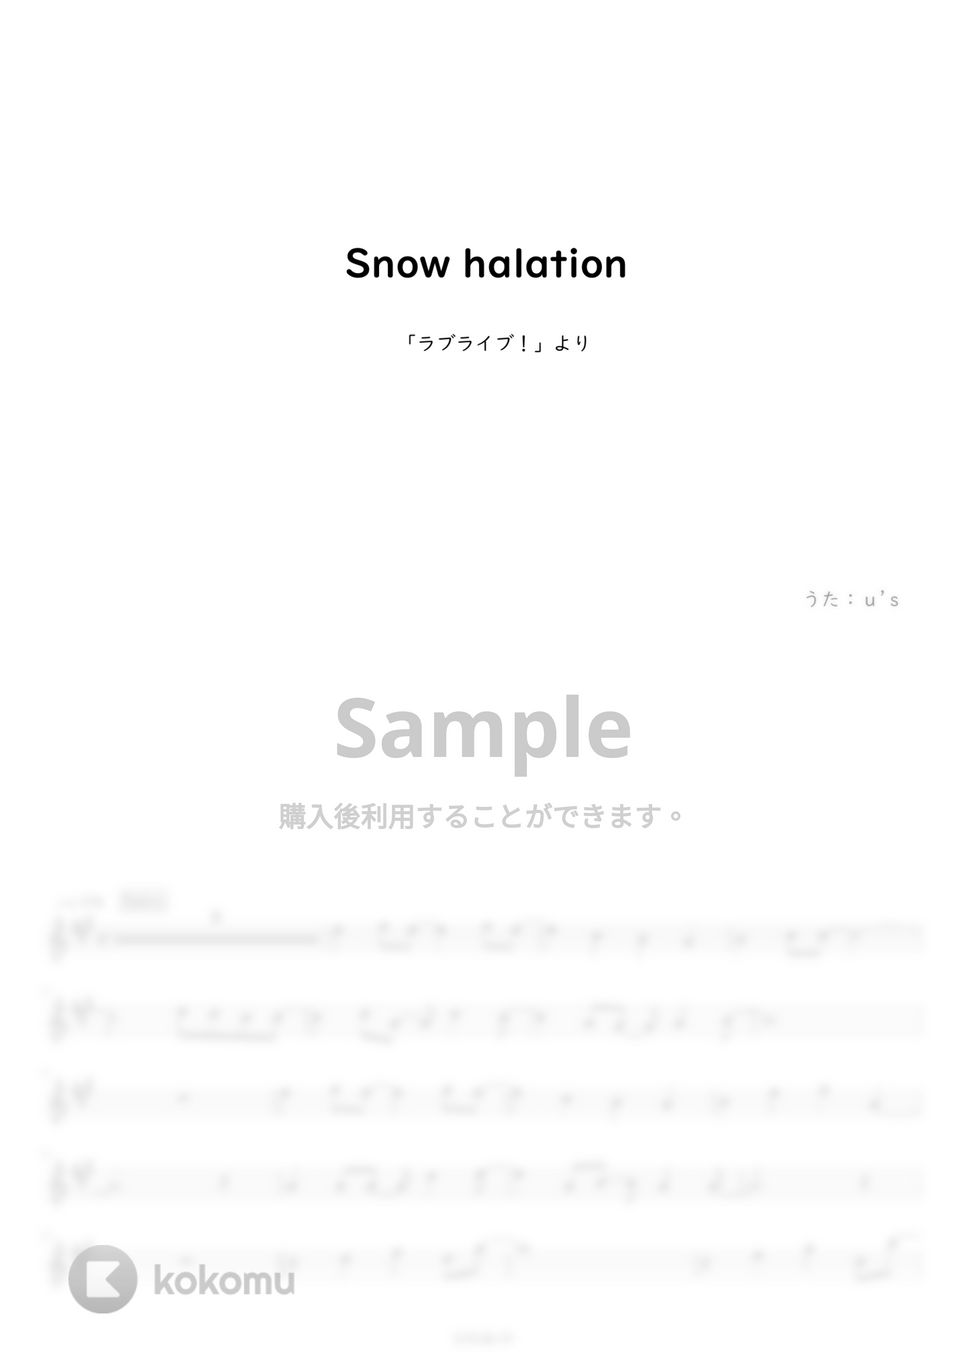 「ラブライブ！」より - Snow halation (フルート用メロディー譜) by もりたあいか